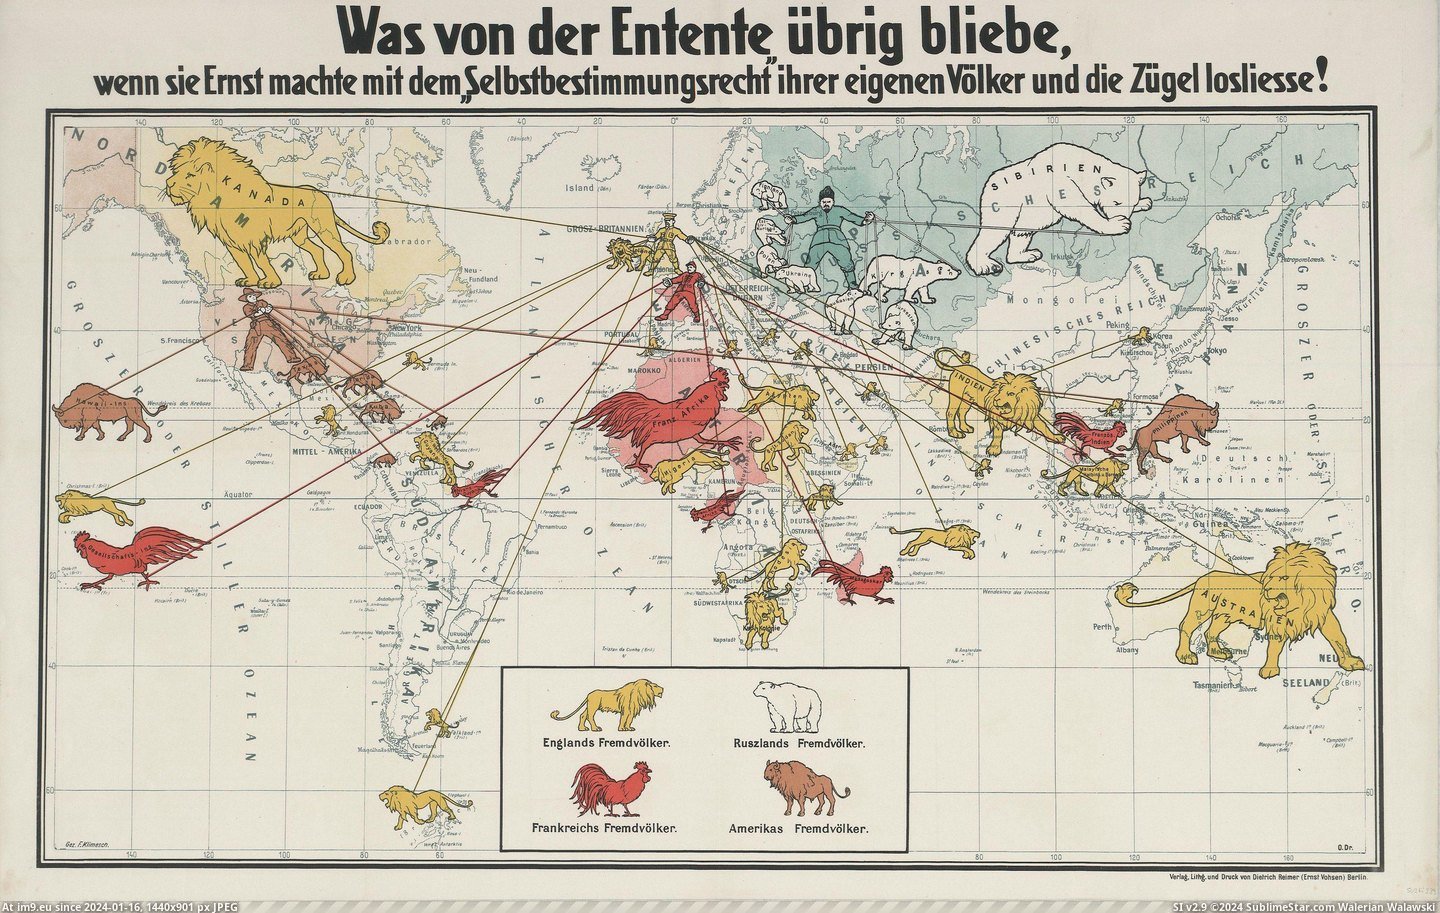 #Map #German #Propaganda #Empires #Allies #Circa #Colonial [Mapporn] German propaganda map of the Allies’ colonial empires, circa 1916. [2993x1884] Pic. (Image of album My r/MAPS favs))